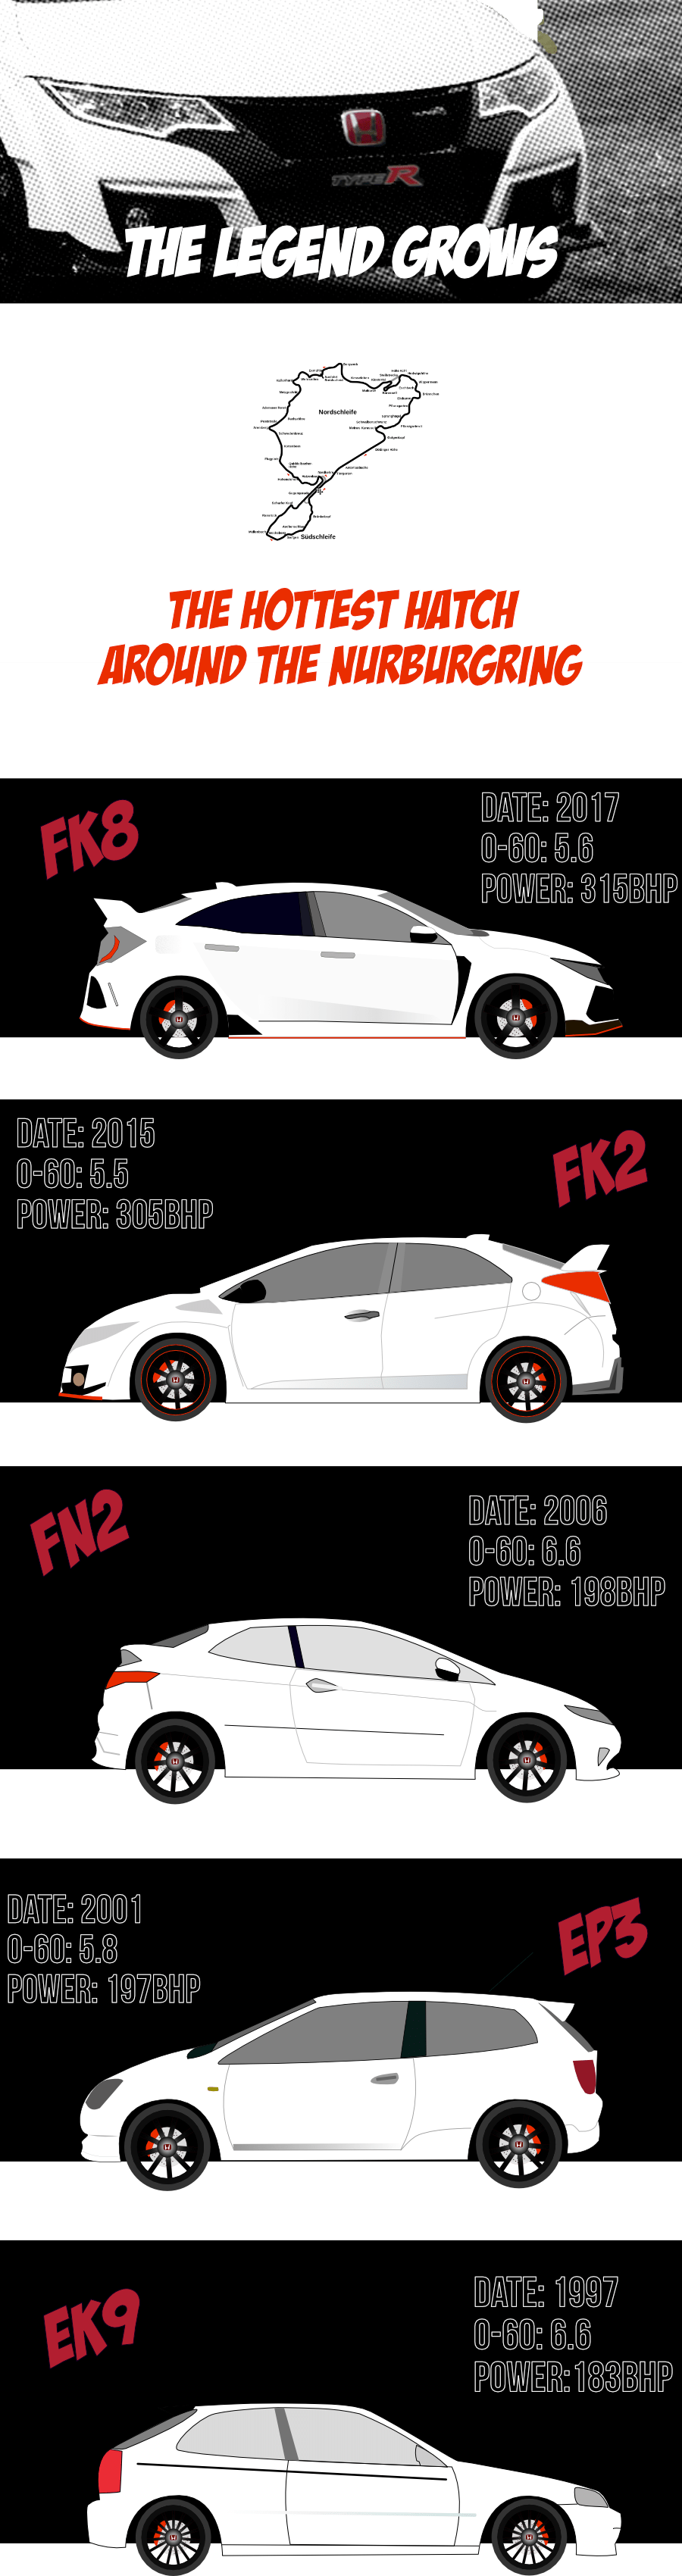 Honda-Civic-Type-R-infographic-plaza